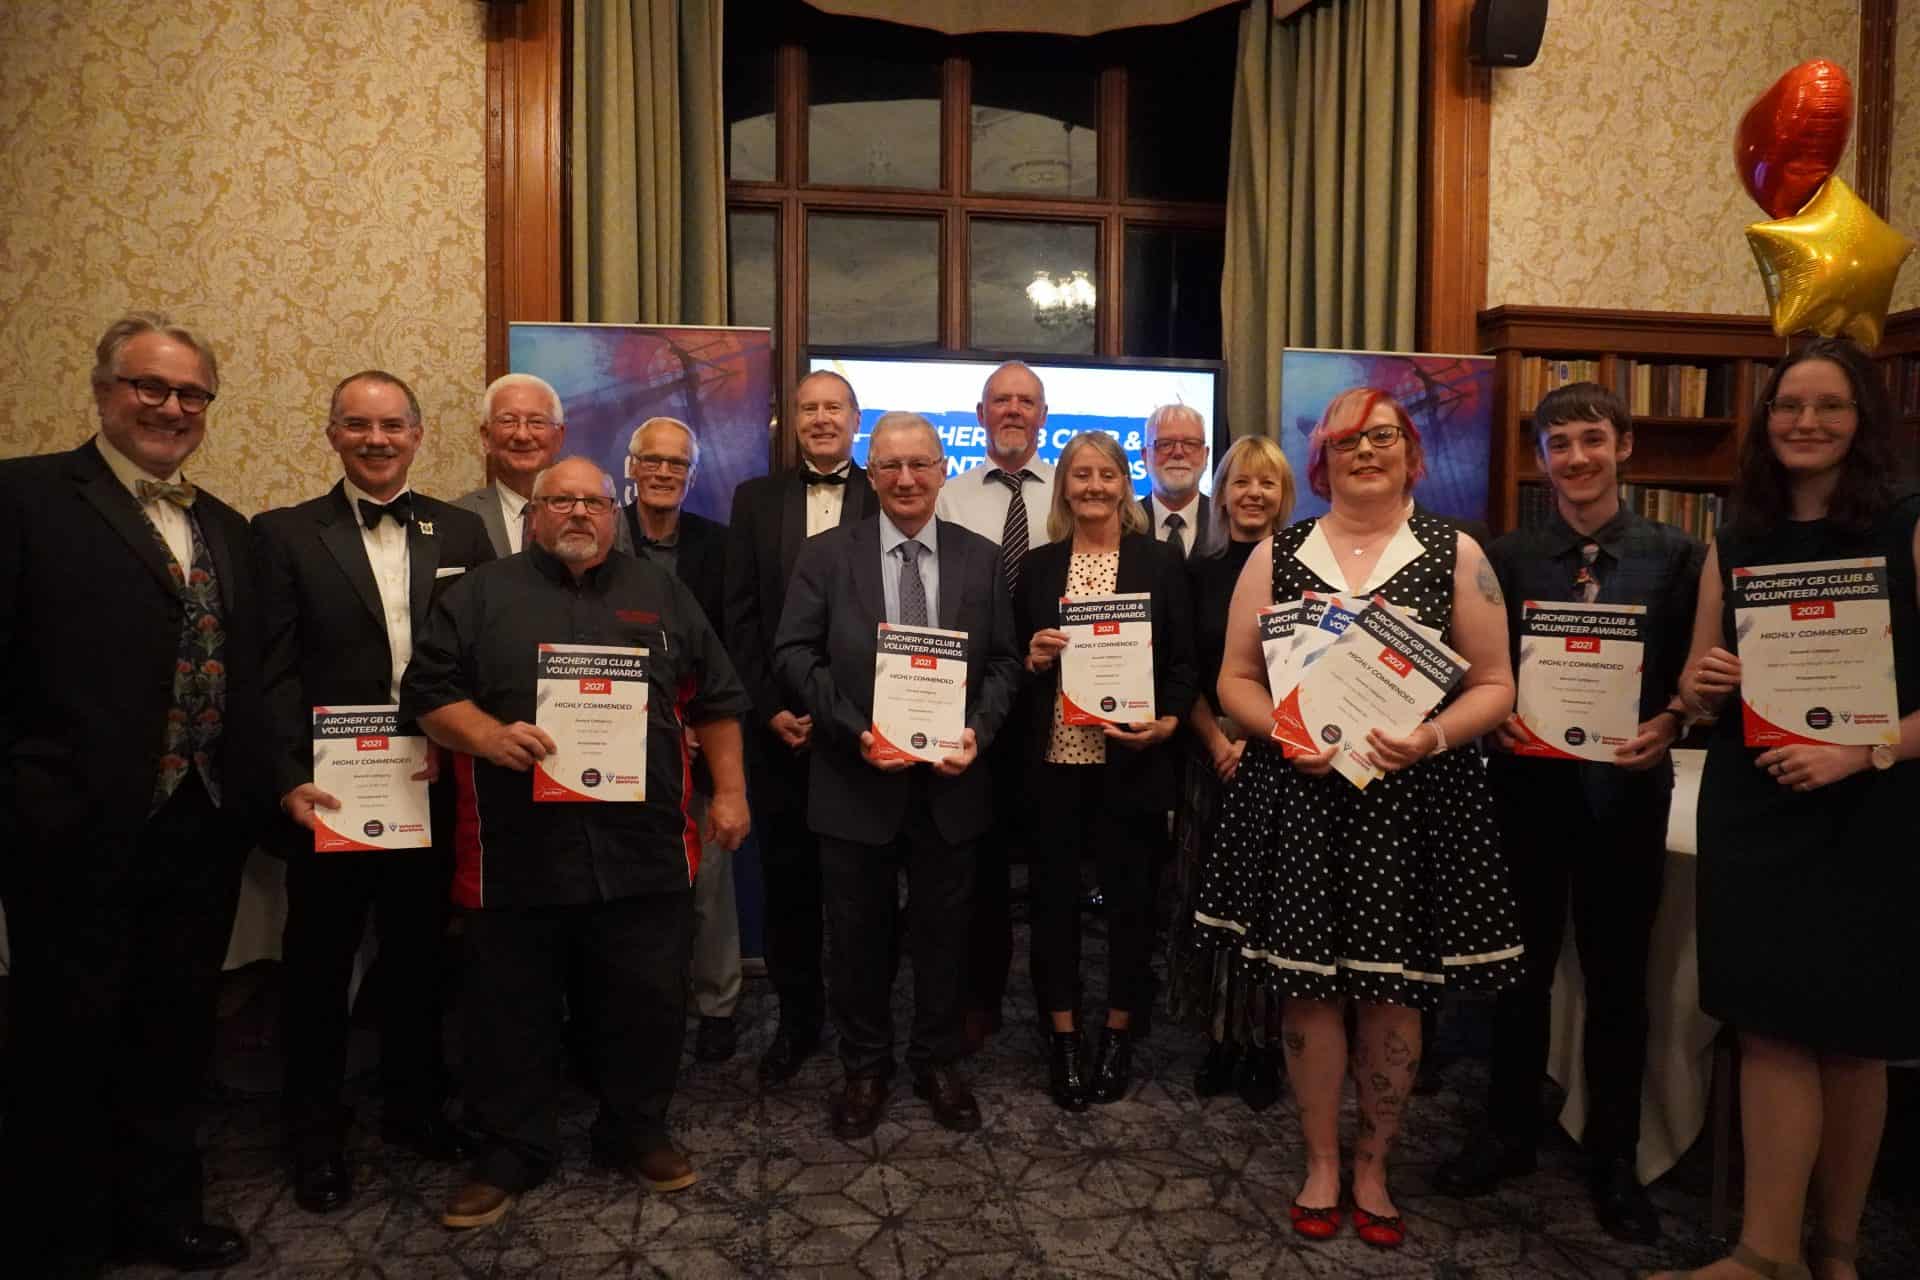 Archery GBs Club and Volunteer Awards shine spotlight on pandemic response